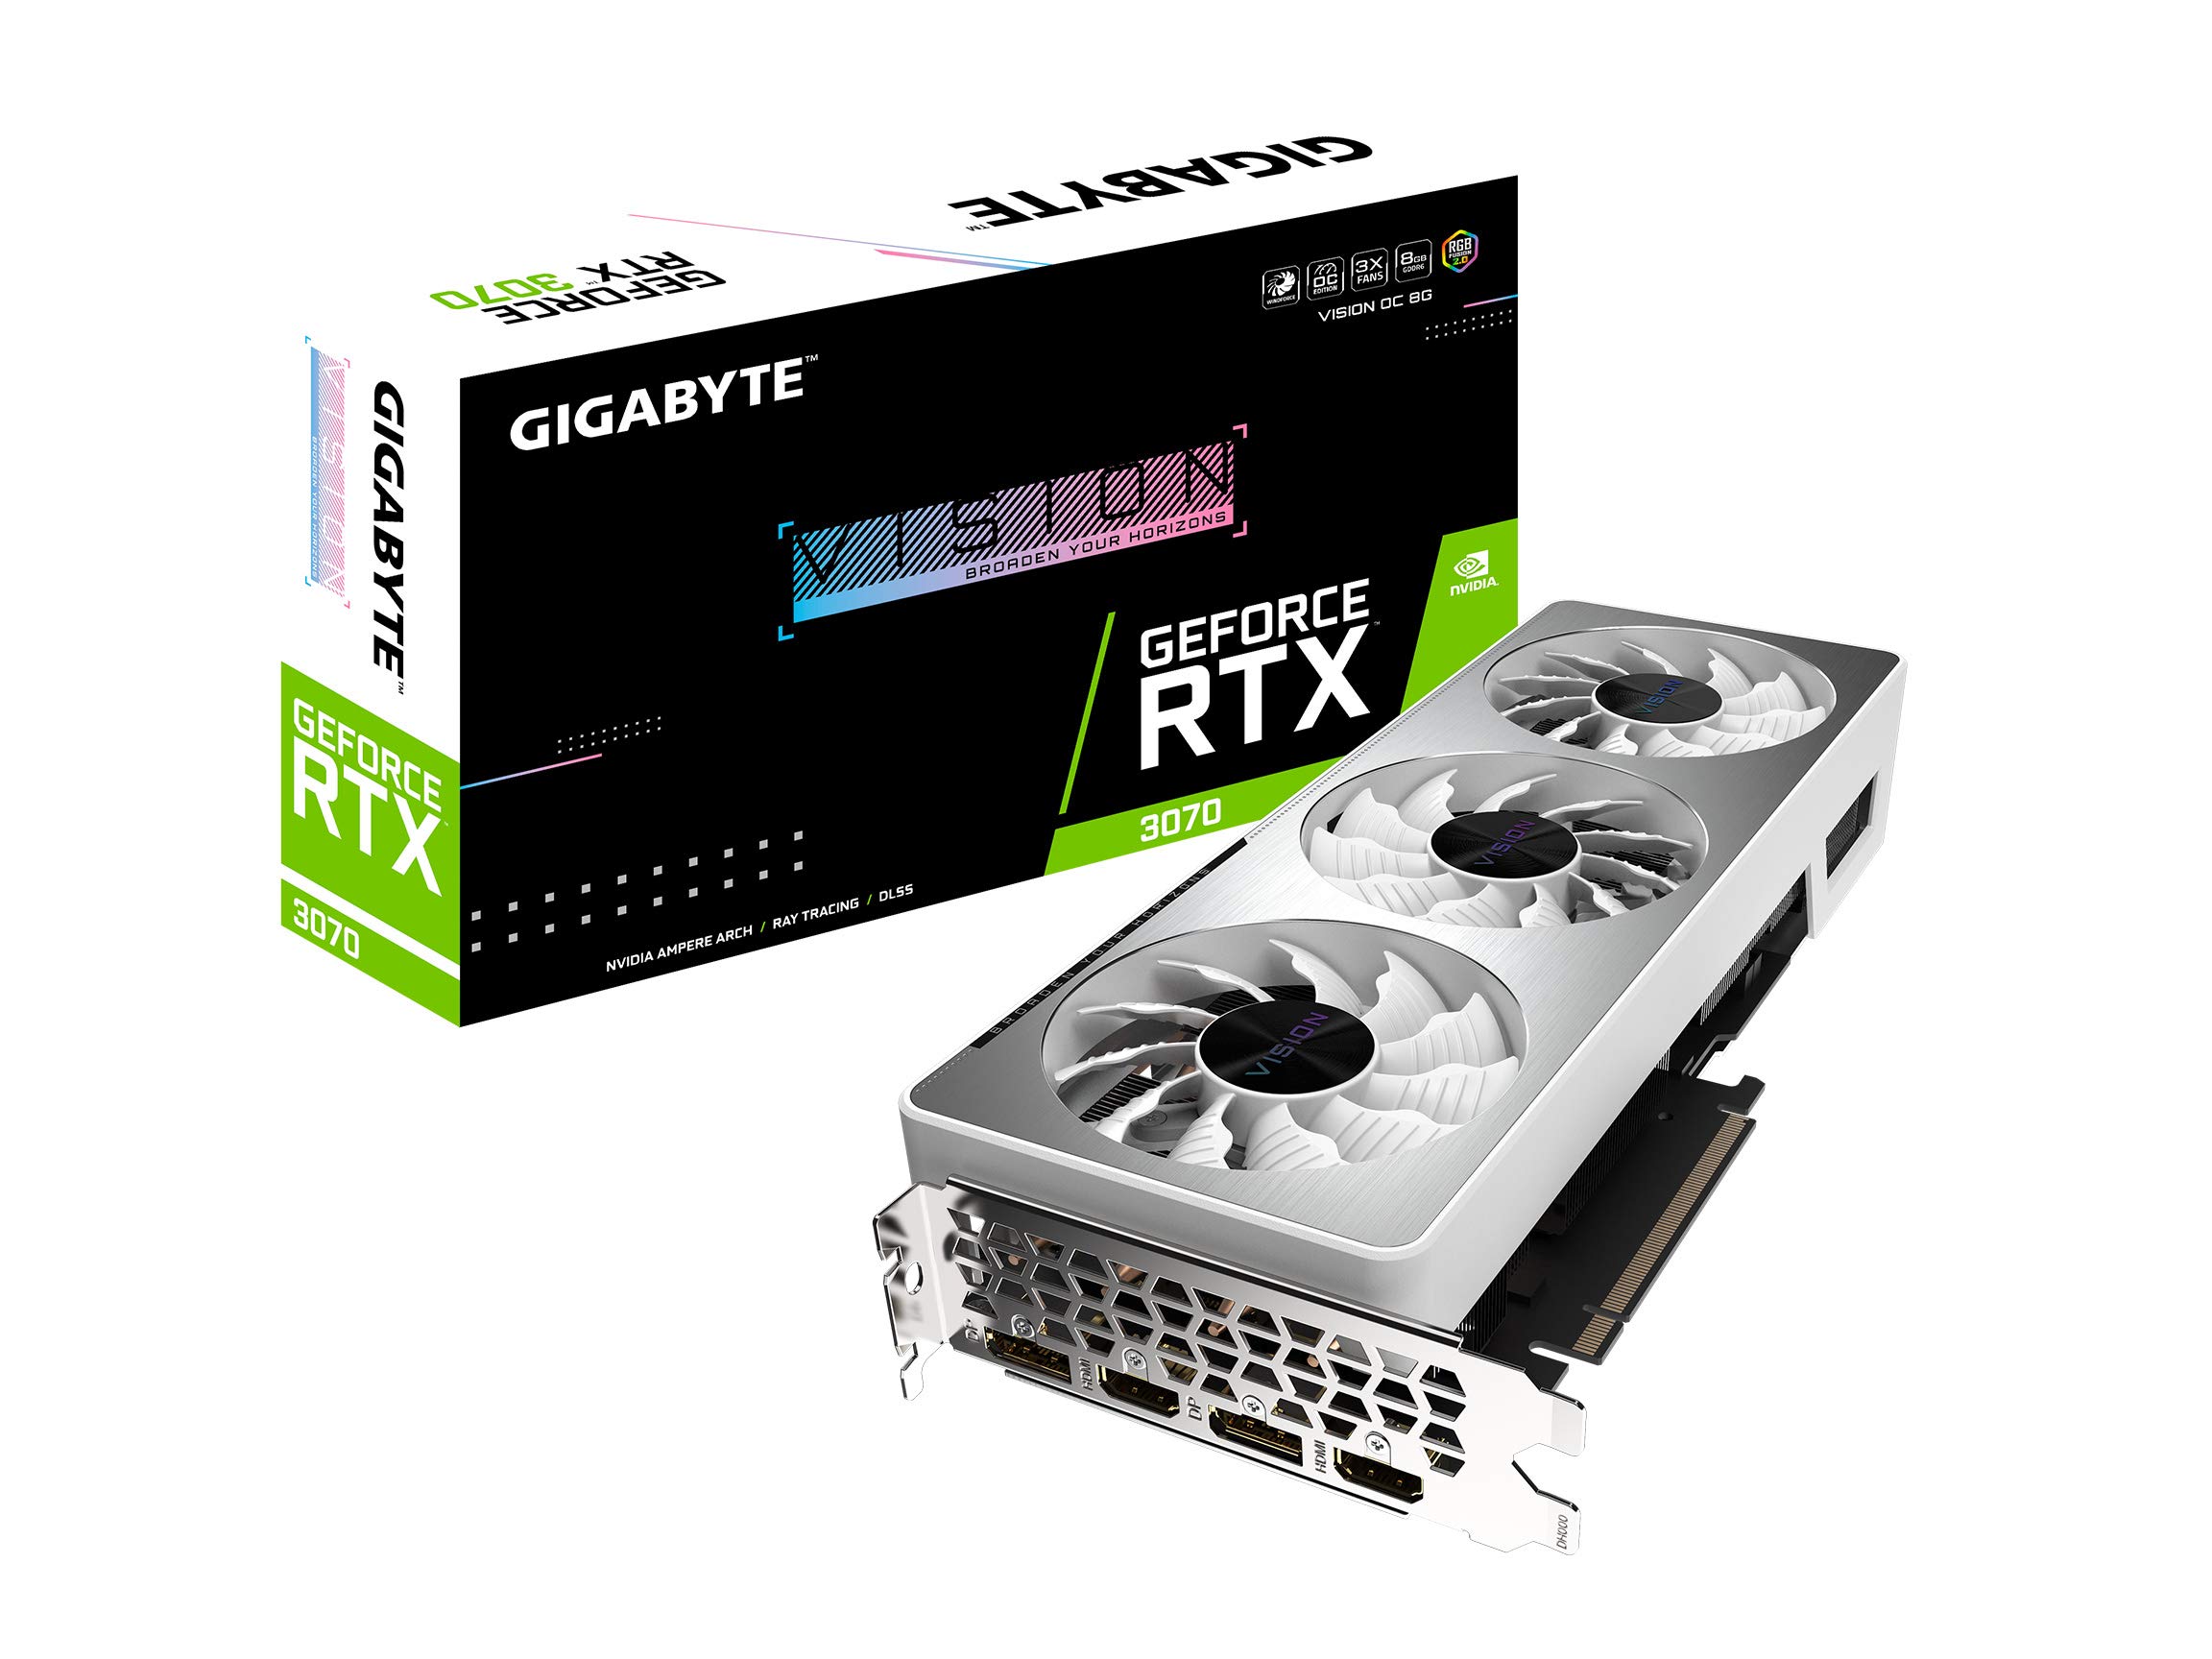 GIGABYTE ギガバイト GeForce RTX 3070 ビジョン OC 8G グラフィックカード 3倍速ウインドフォースフ